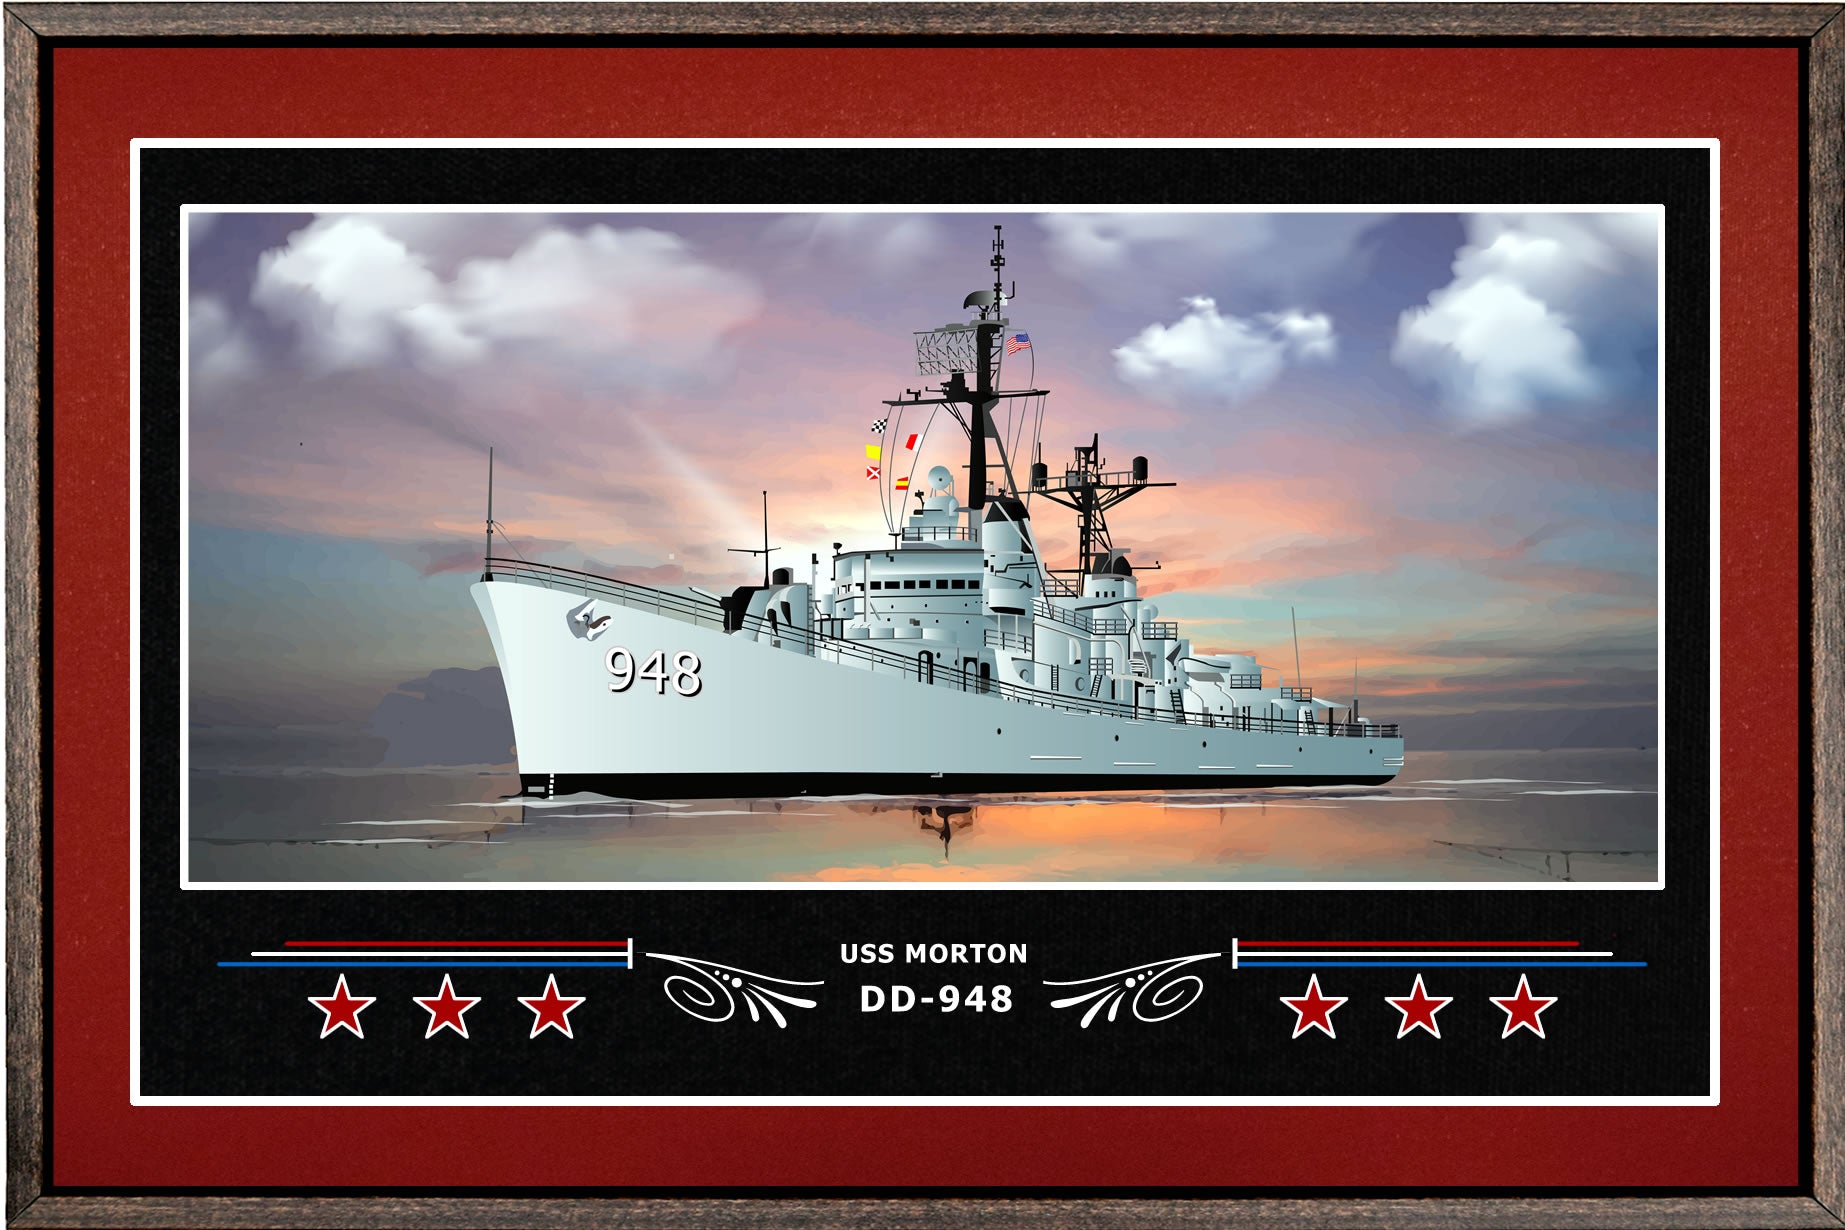 USS MORTON DD 948 BOX FRAMED CANVAS ART BURGUNDY